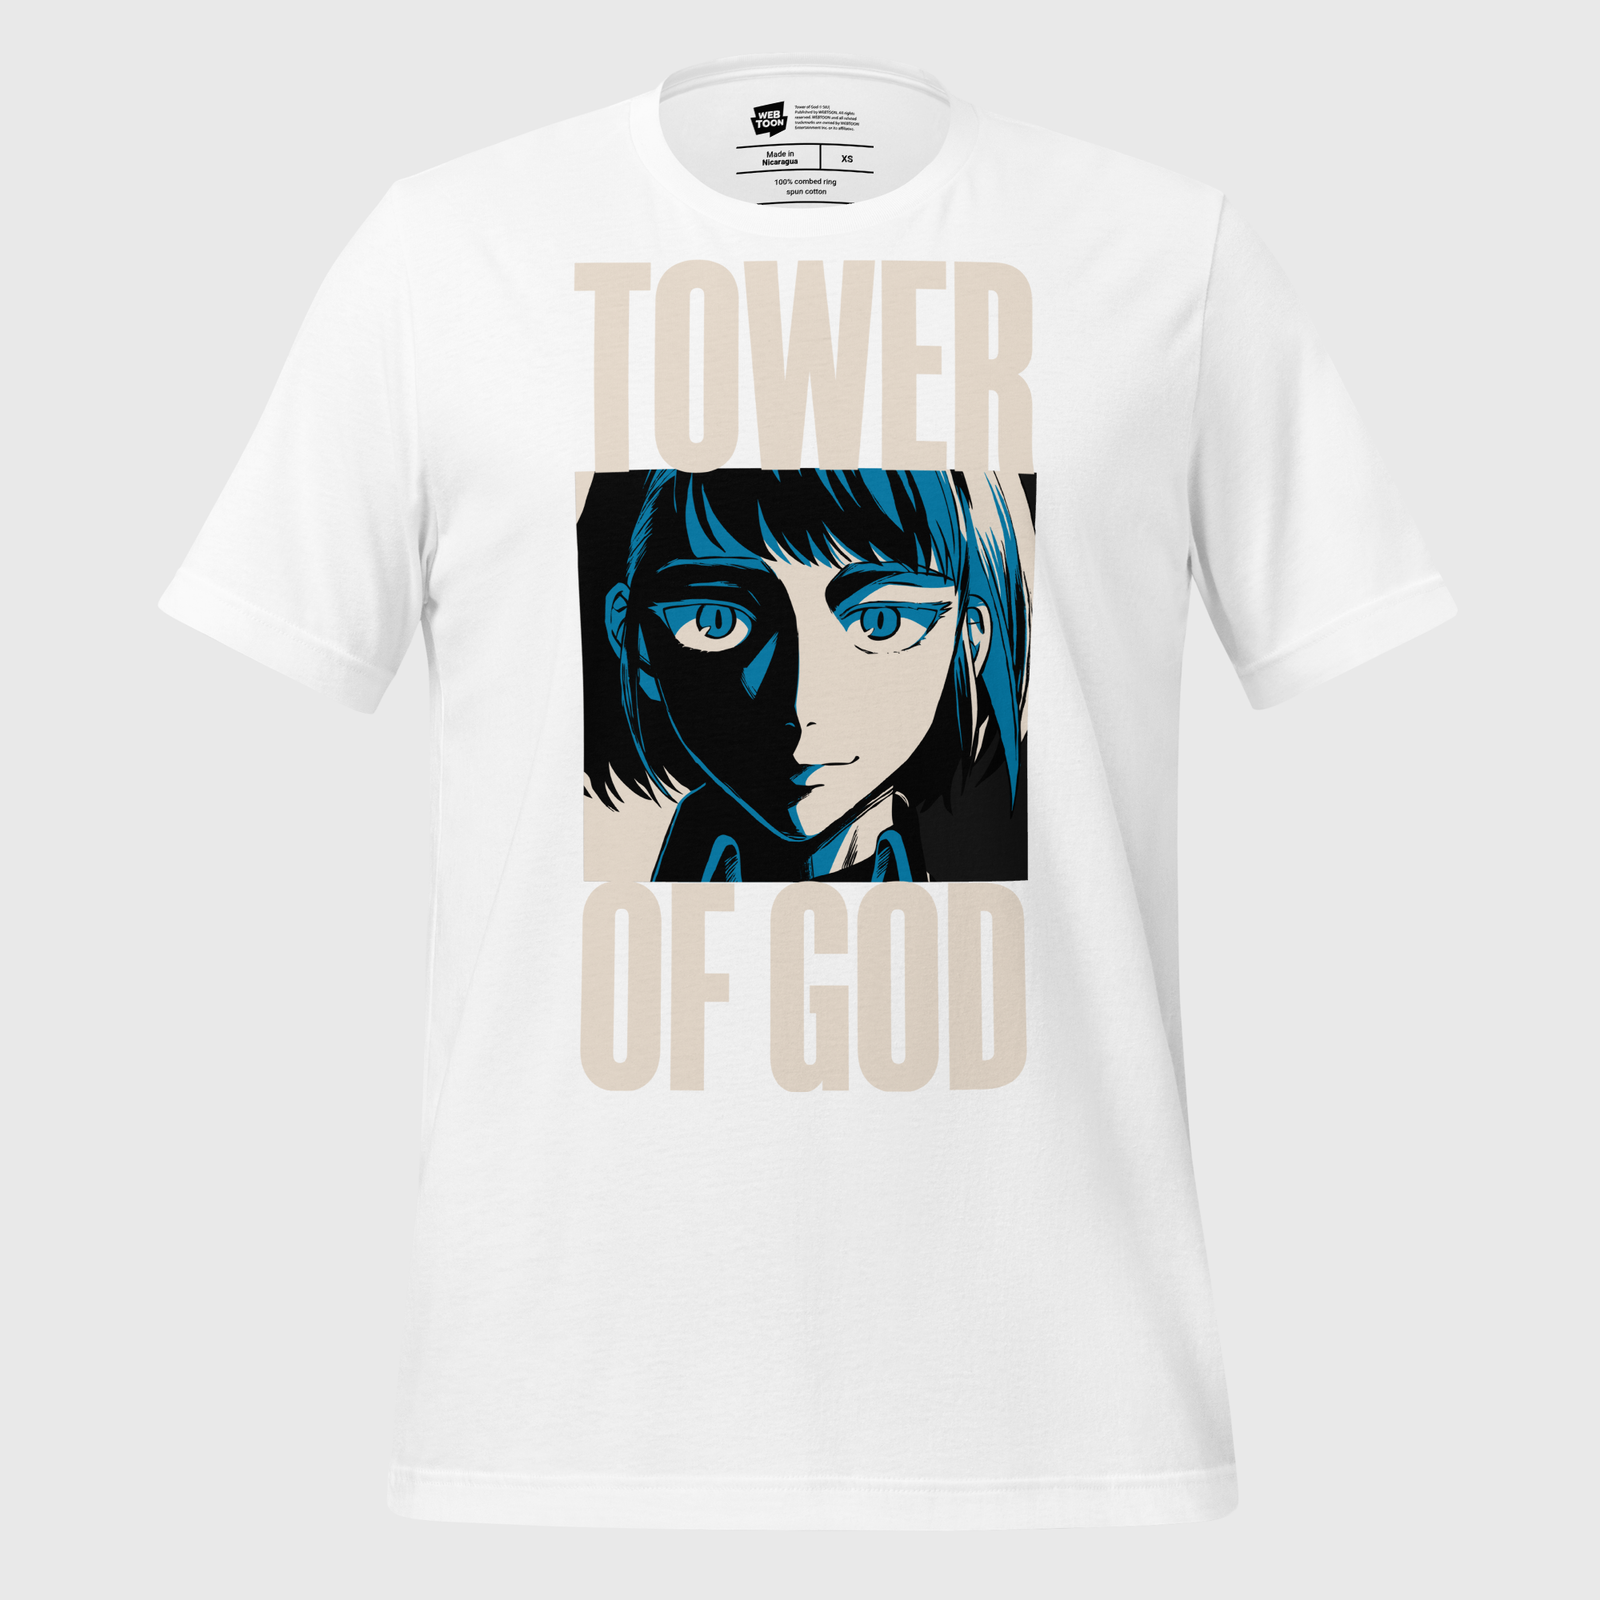 Shop Tower Of God online